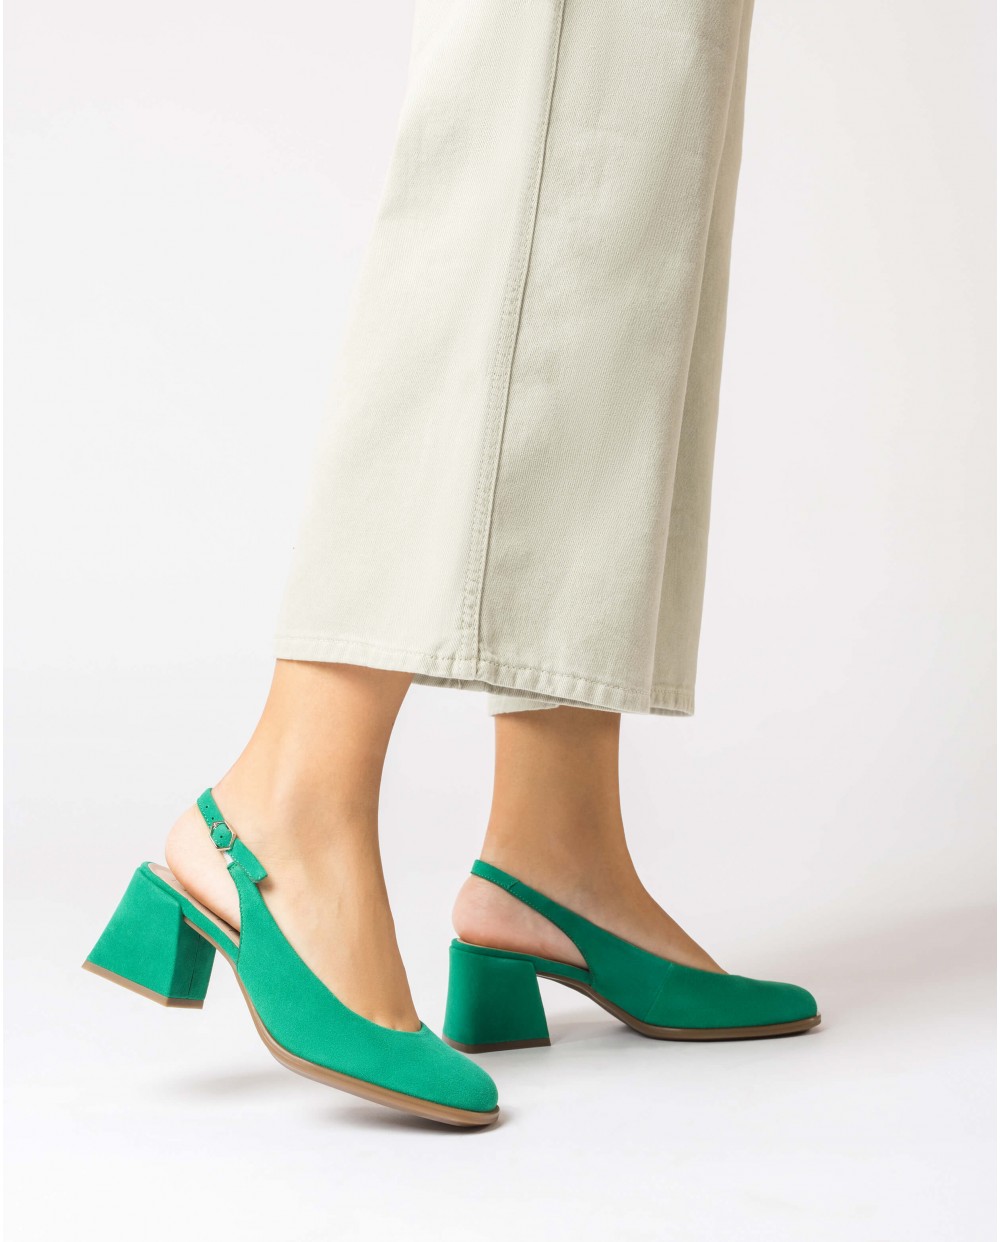 Wonders-Heels-Green Adele shoes